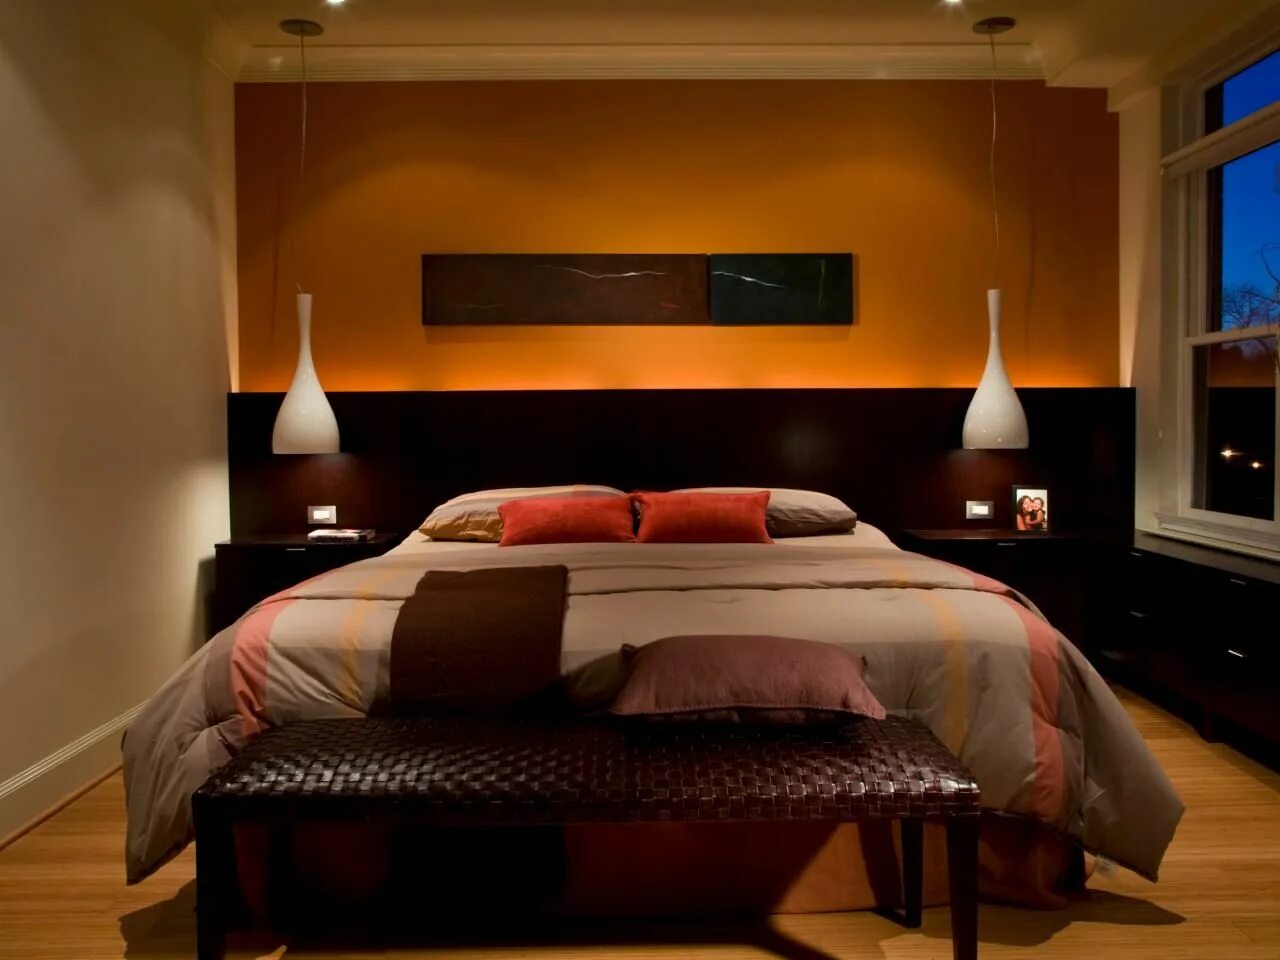 Спальня в оранжевых тонах. Спальня в коричневых тонах. Спальня в коричневом цвете. Спальня в терракотовых тонах. Спальня в темном цвете